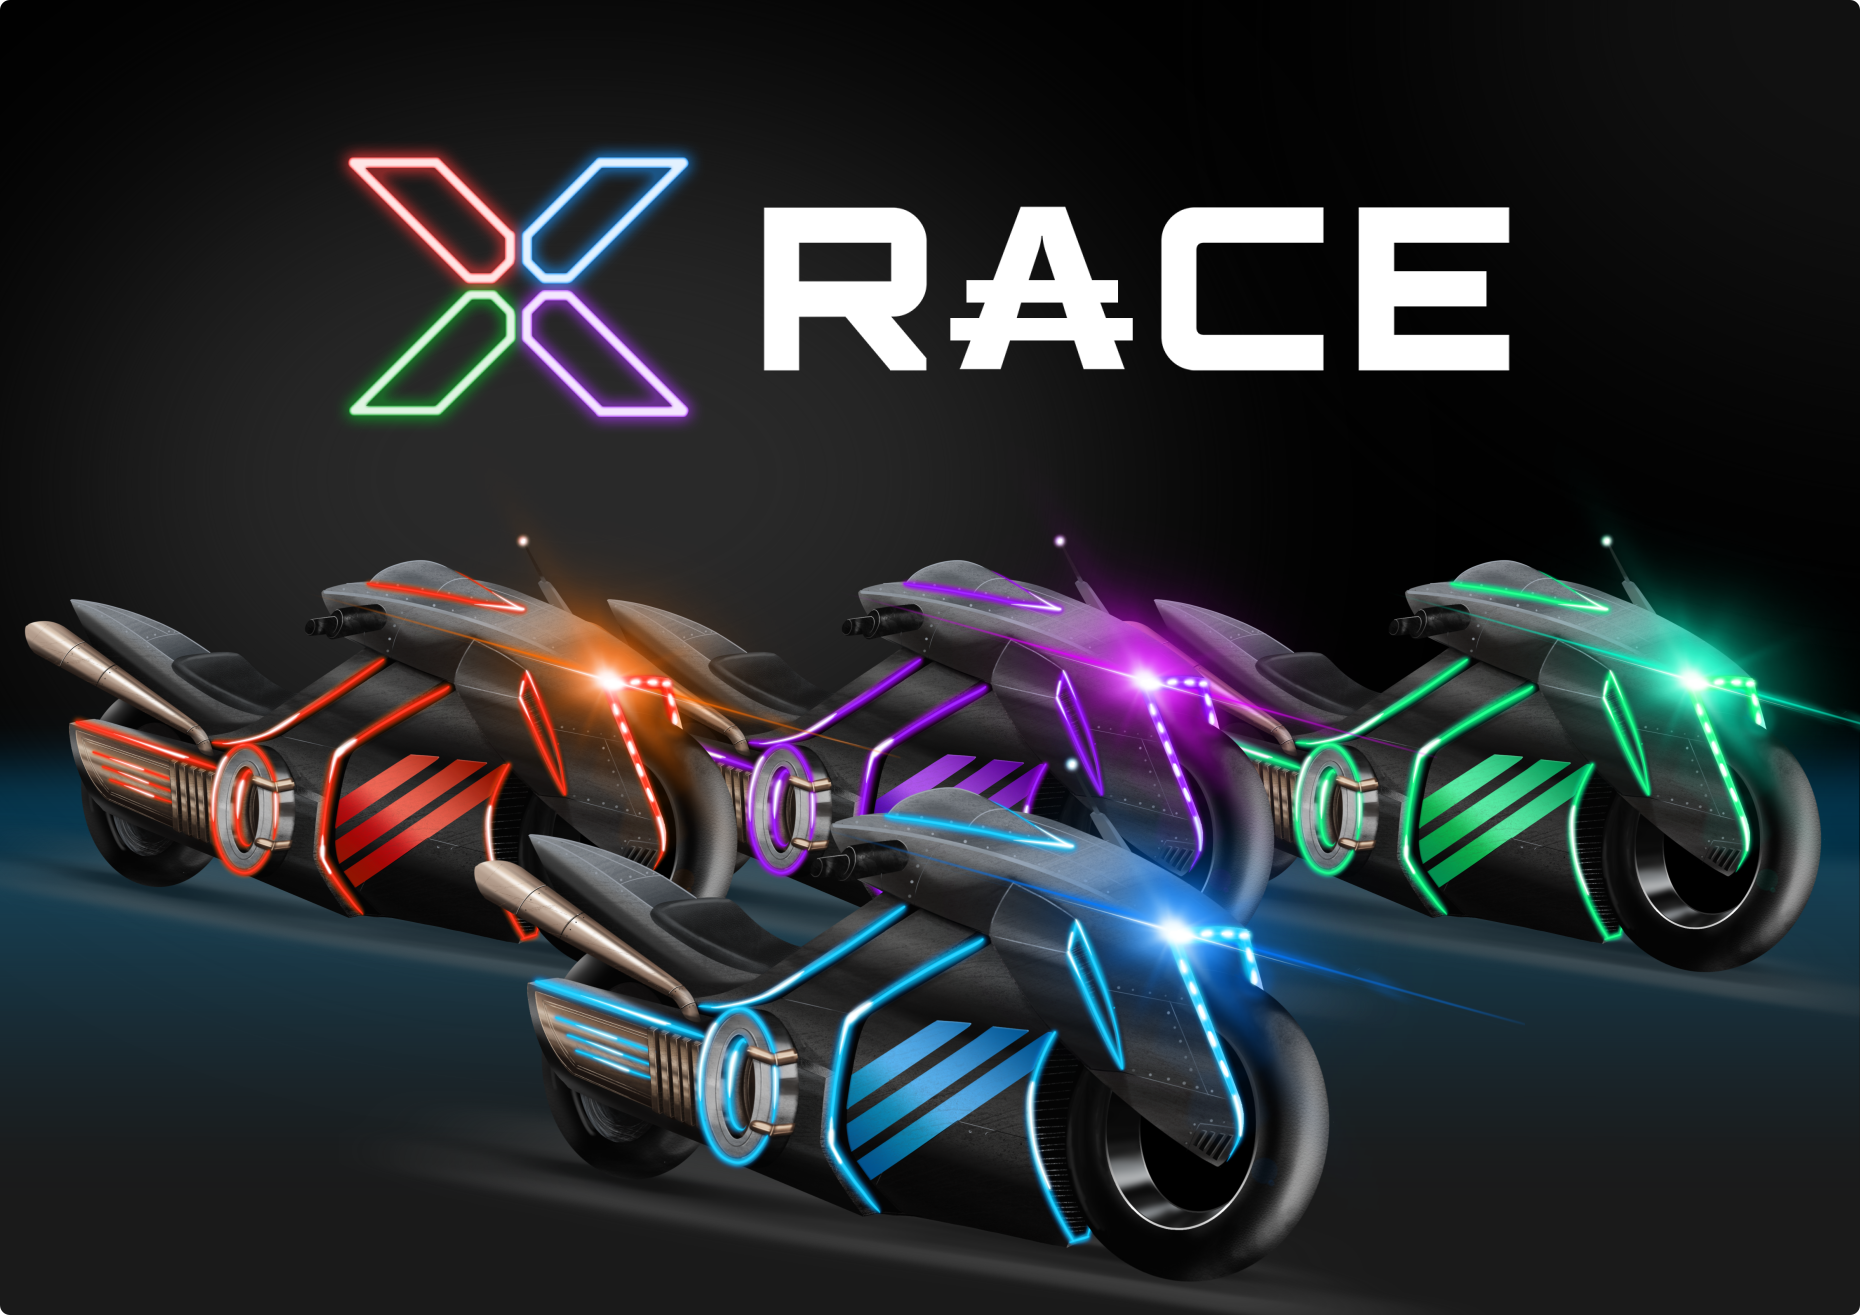 x racer logo